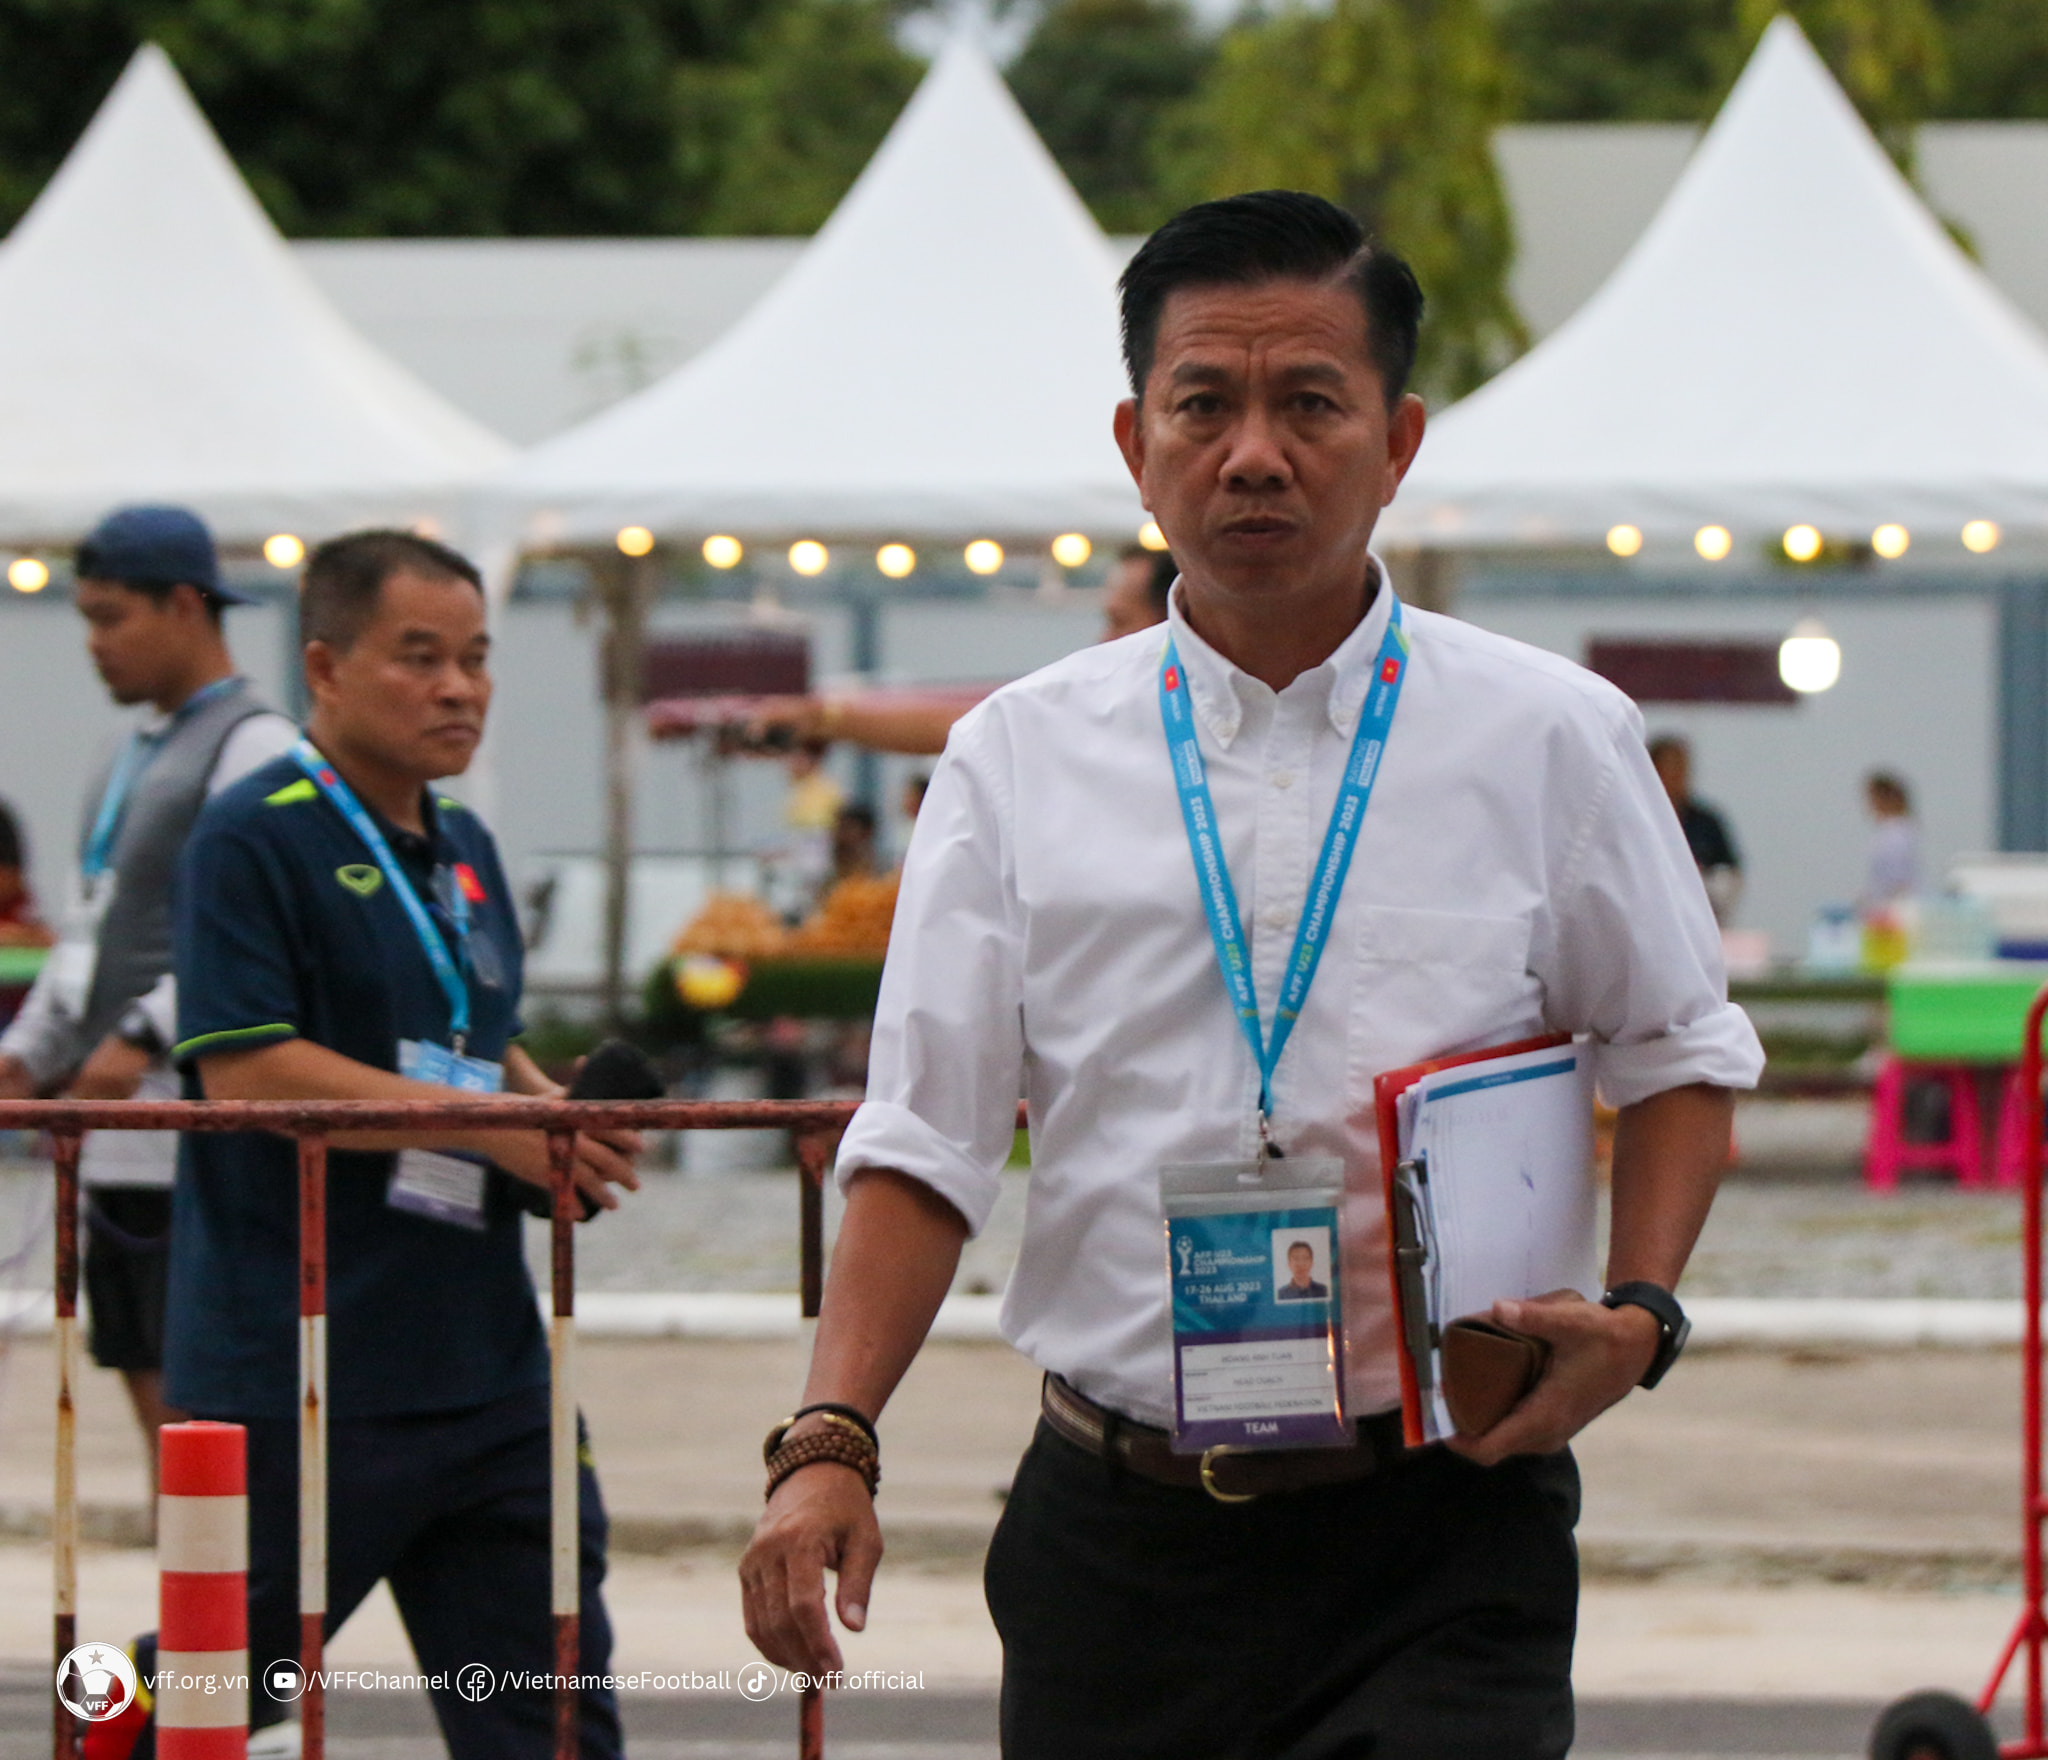 Tài cầm quân của HLV Hoàng Anh Tuấn giúp U23 Viêt Nam dễ dàng giành chiến thắng trước U23 Malaysia